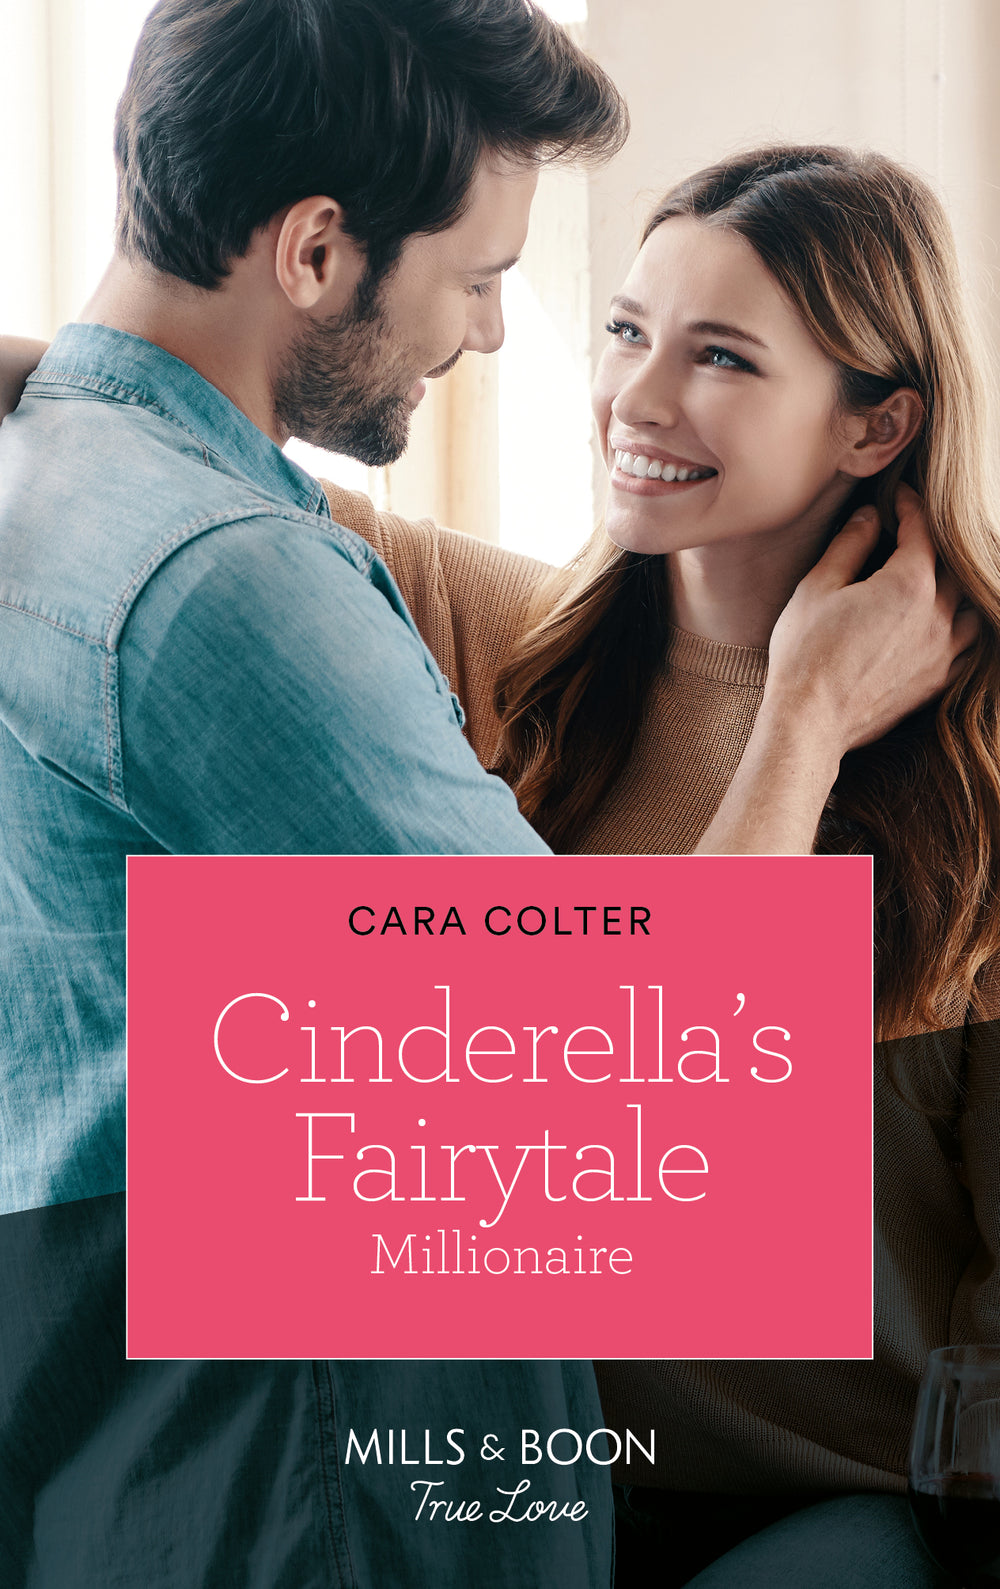 Cinderella's Fairytale Millionaire